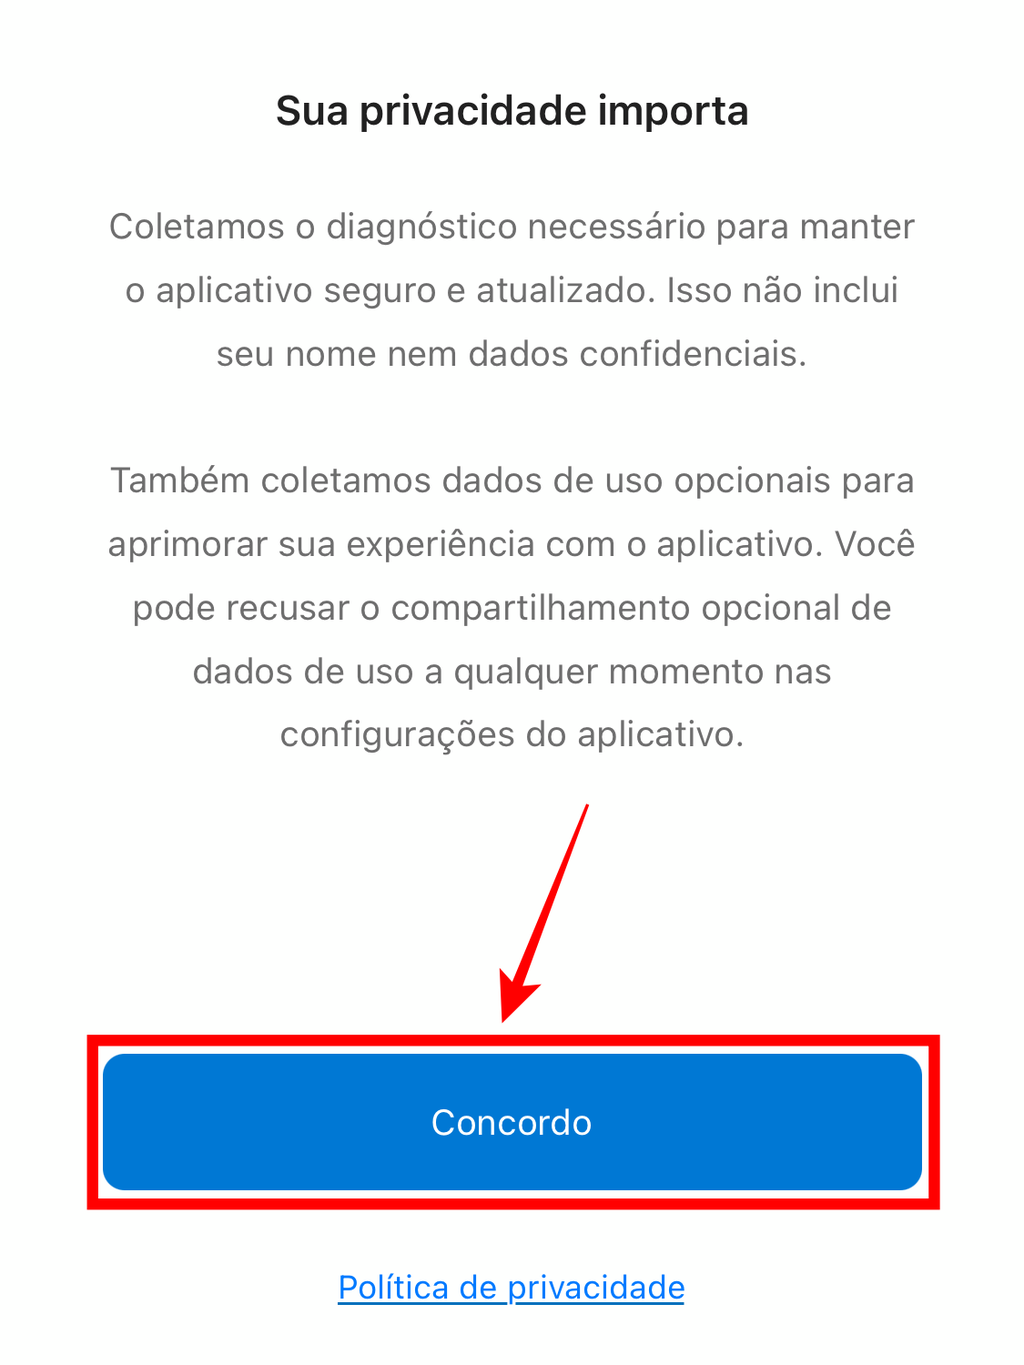 Mais um aviso da Microsoft, agora no celular, informando sobre a privacidade e segurança do aplicativo (Captura de tela: Caio Carvalho/Canaltech)